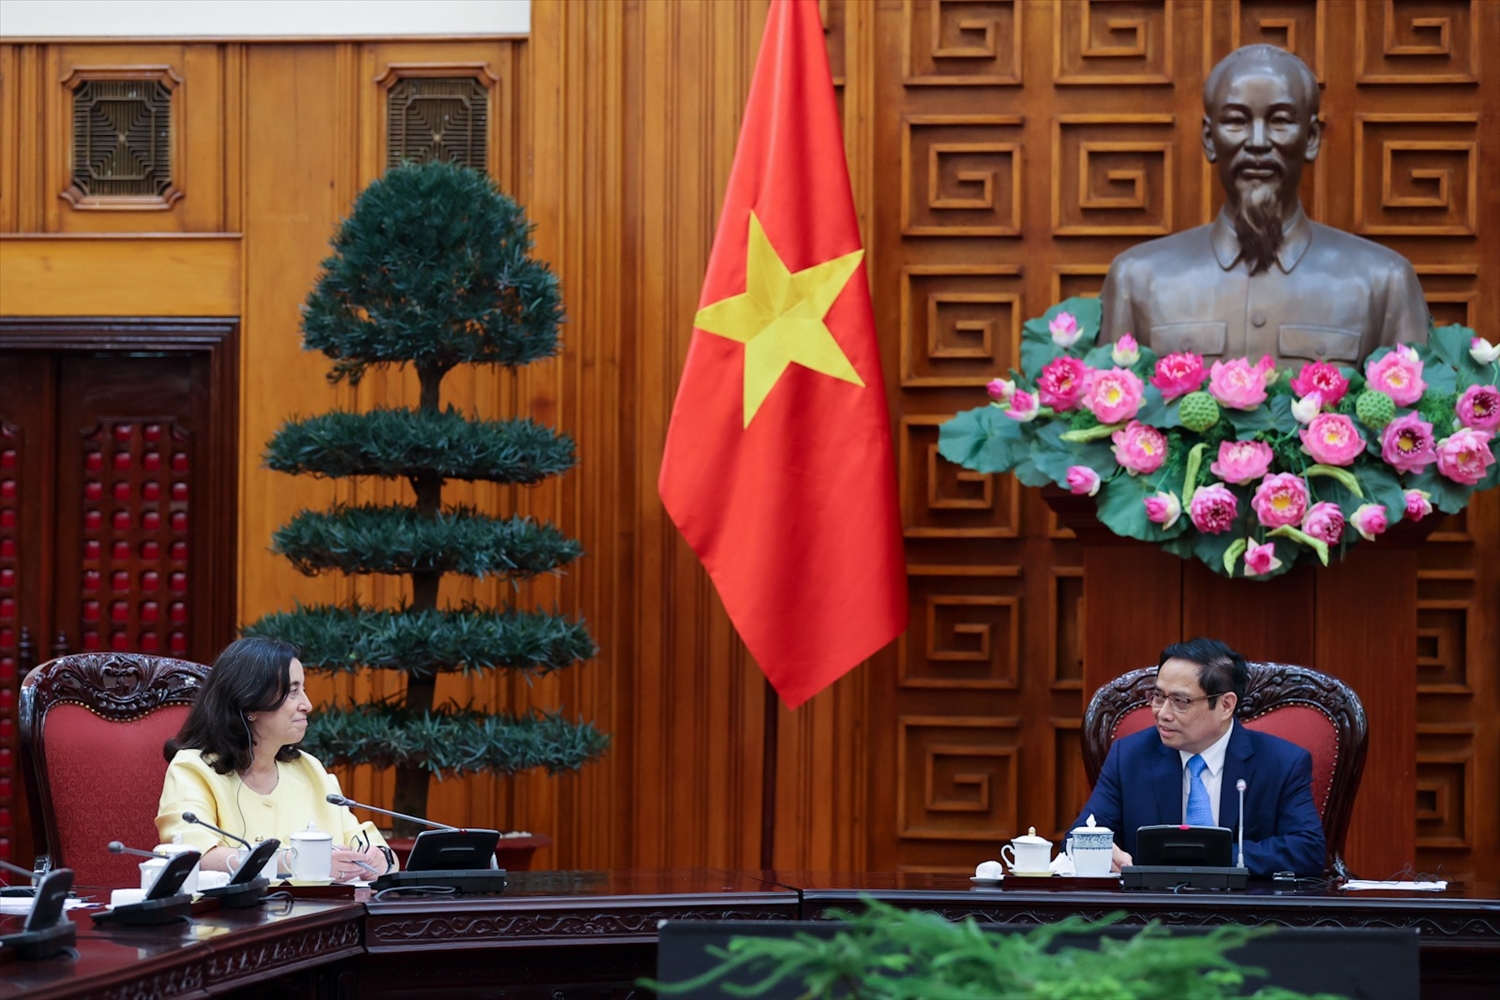 Thủ tướng Phạm Minh Chính khẳng định Chính phủ Việt Nam luôn coi WB là người bạn tốt, đối tác phát triển rất quan trọng - Ảnh: VGP/Nhật Bắc